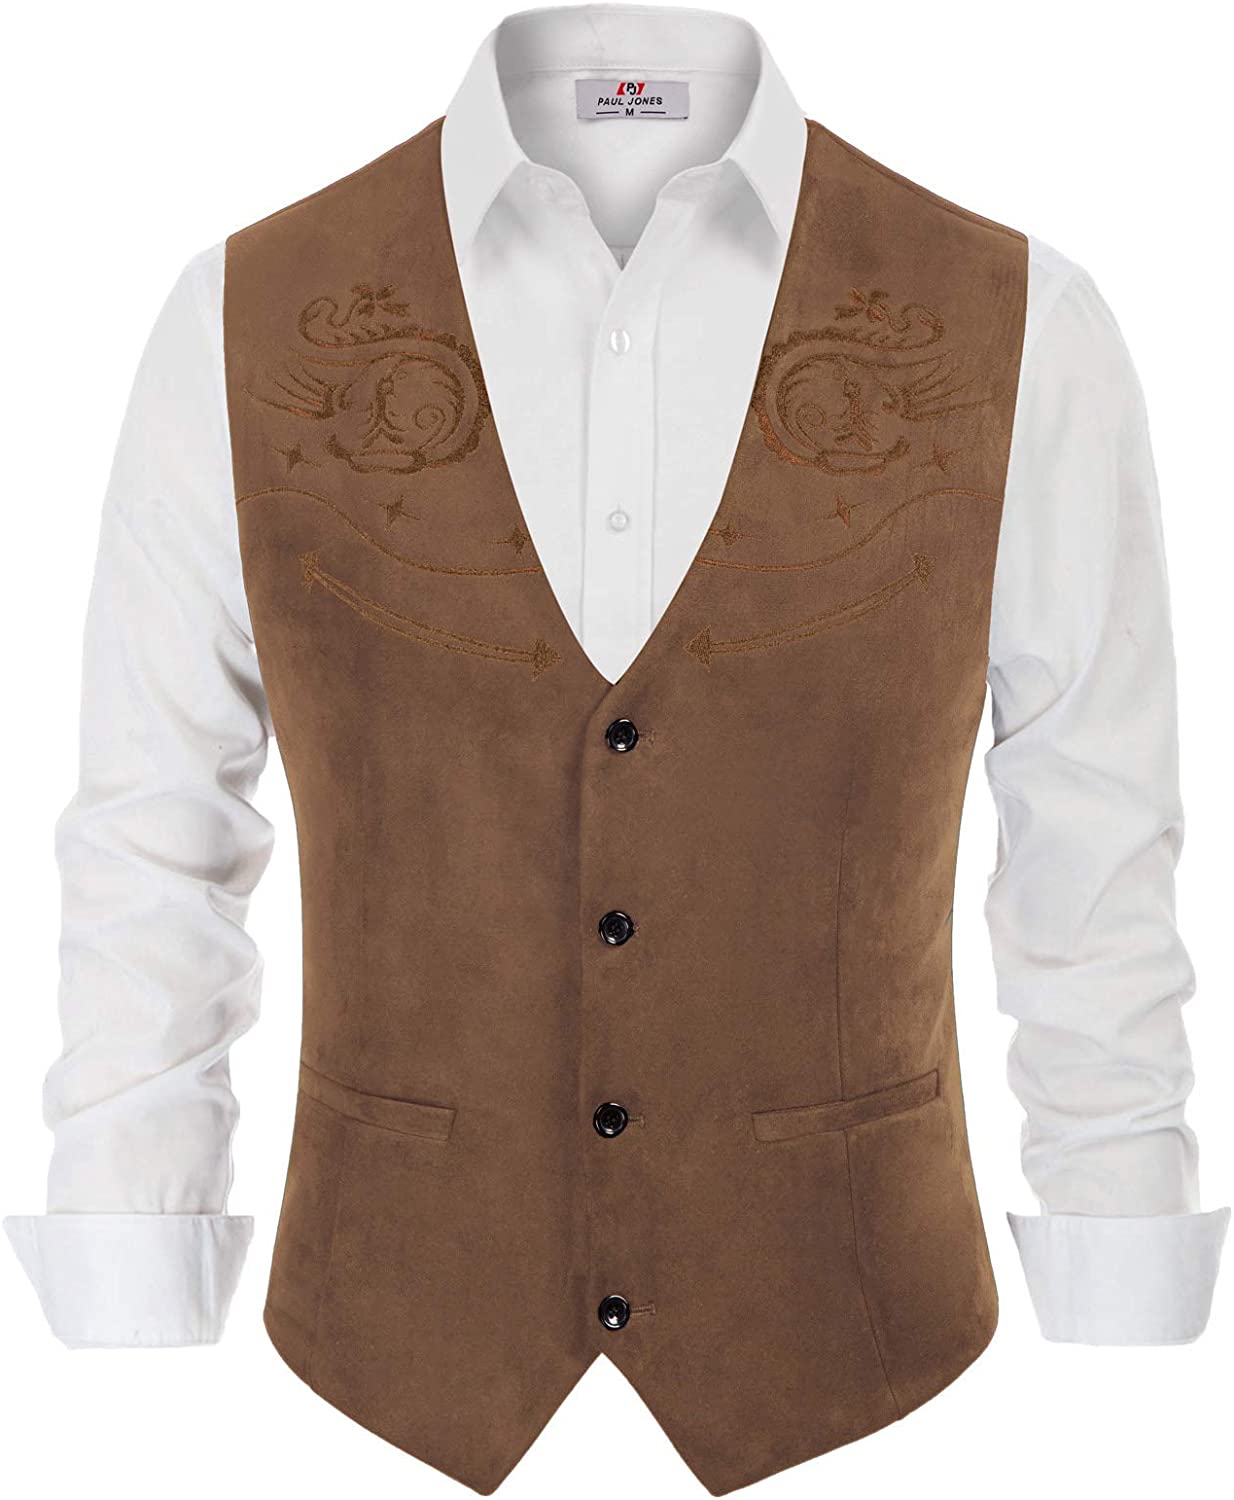 Paul Jones Men's Suede Leather Suit Vest Casual Western Cowboy Waistcoat Vest 